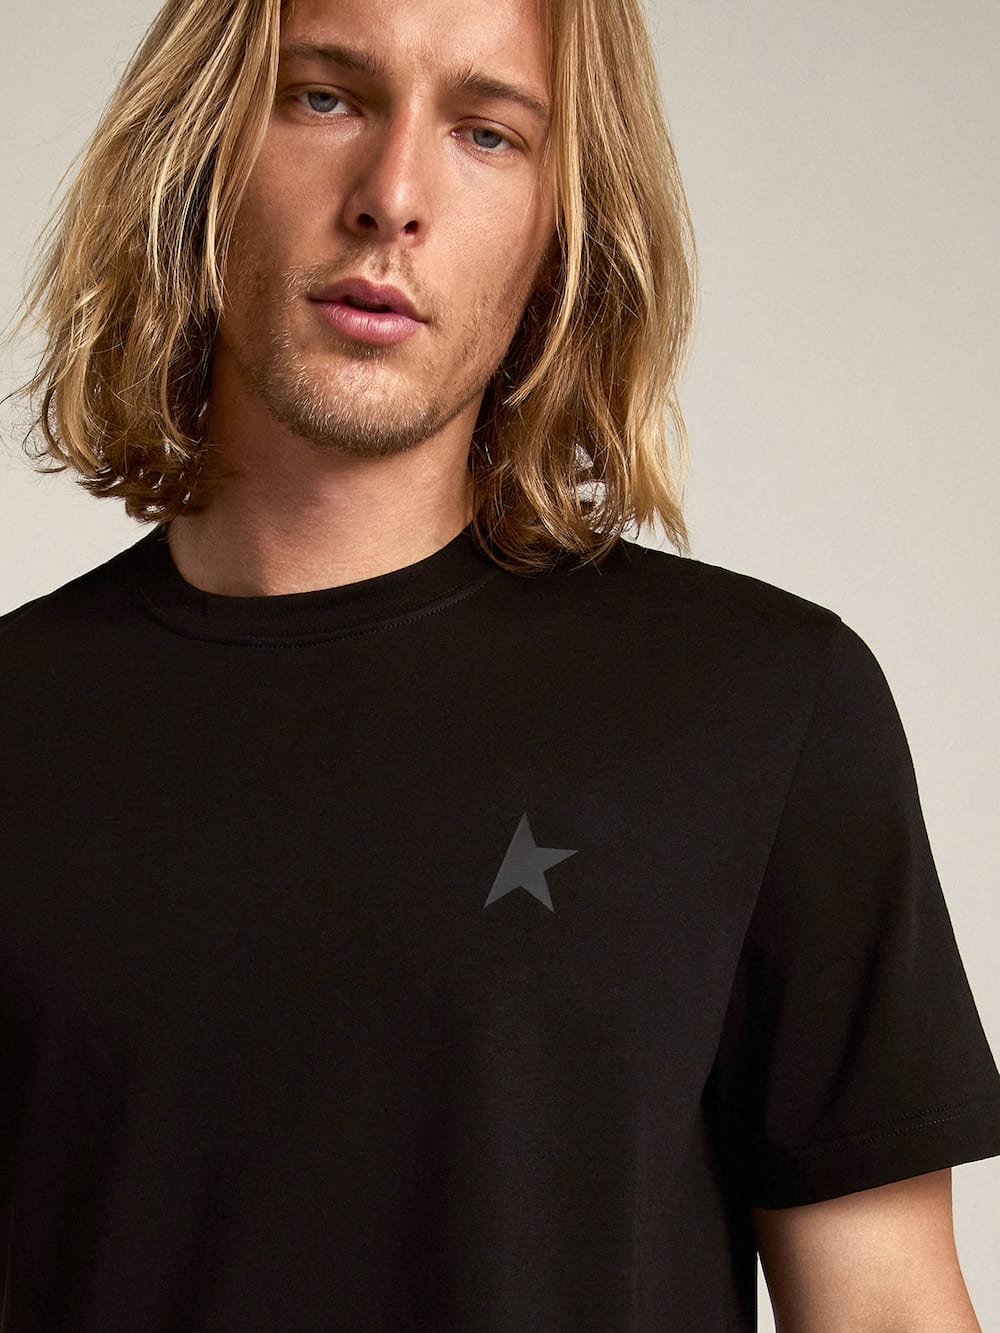 Golden Goose - Camiseta preta Coleção Star com estrela tom sobre tom na frente in 